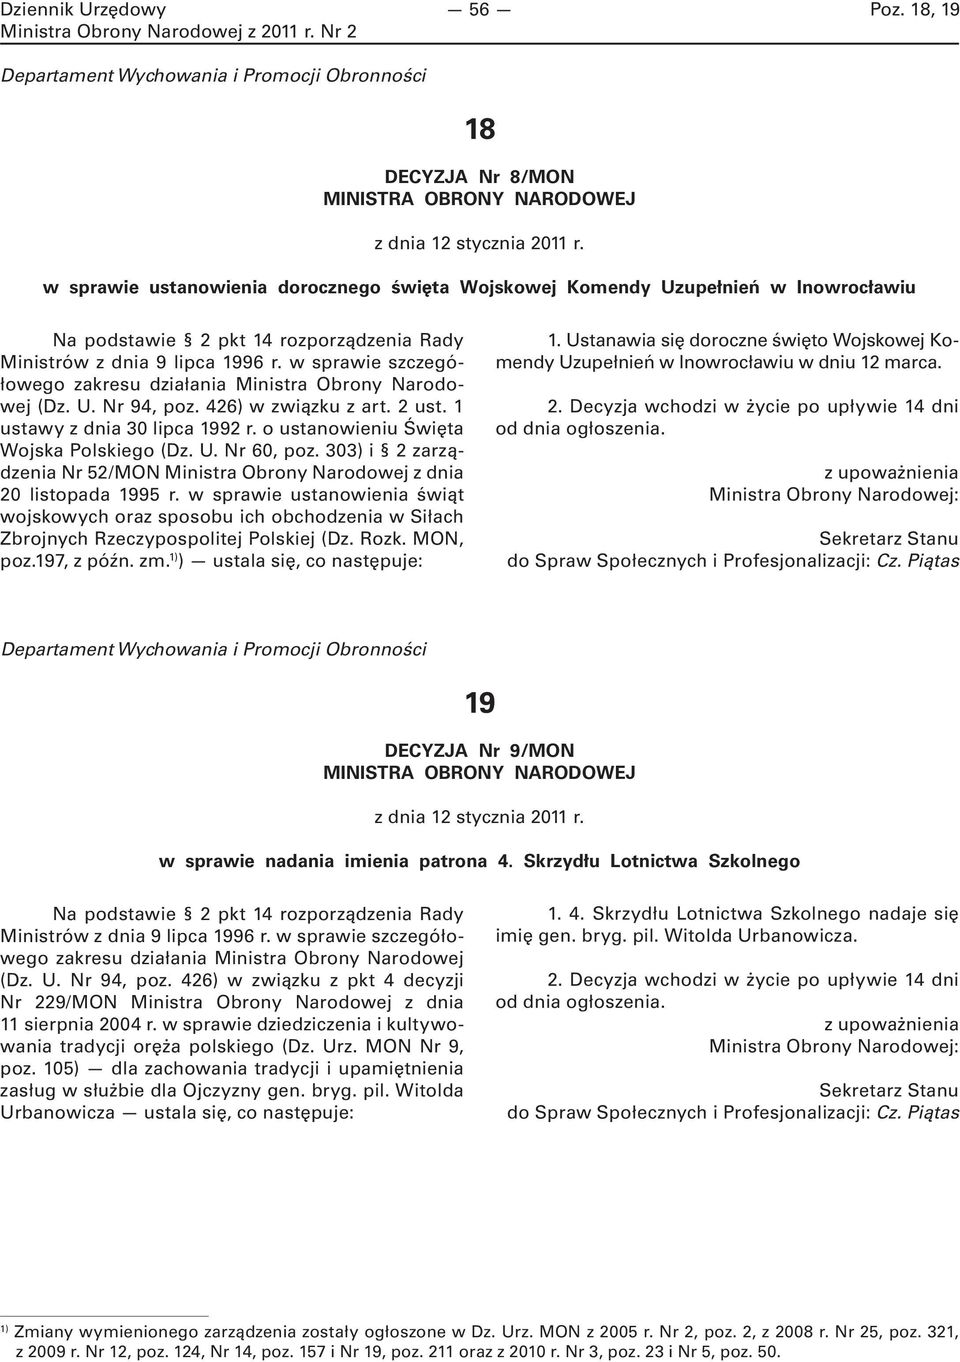 w sprawie szczegółowego zakresu działania Ministra Obrony Narodowej (Dz. U. Nr 94, poz. 426) w związku z art. 2 ust. 1 ustawy z dnia 30 lipca 1992 r. o ustanowieniu Święta Wojska Polskiego (Dz. U. Nr 60, poz.